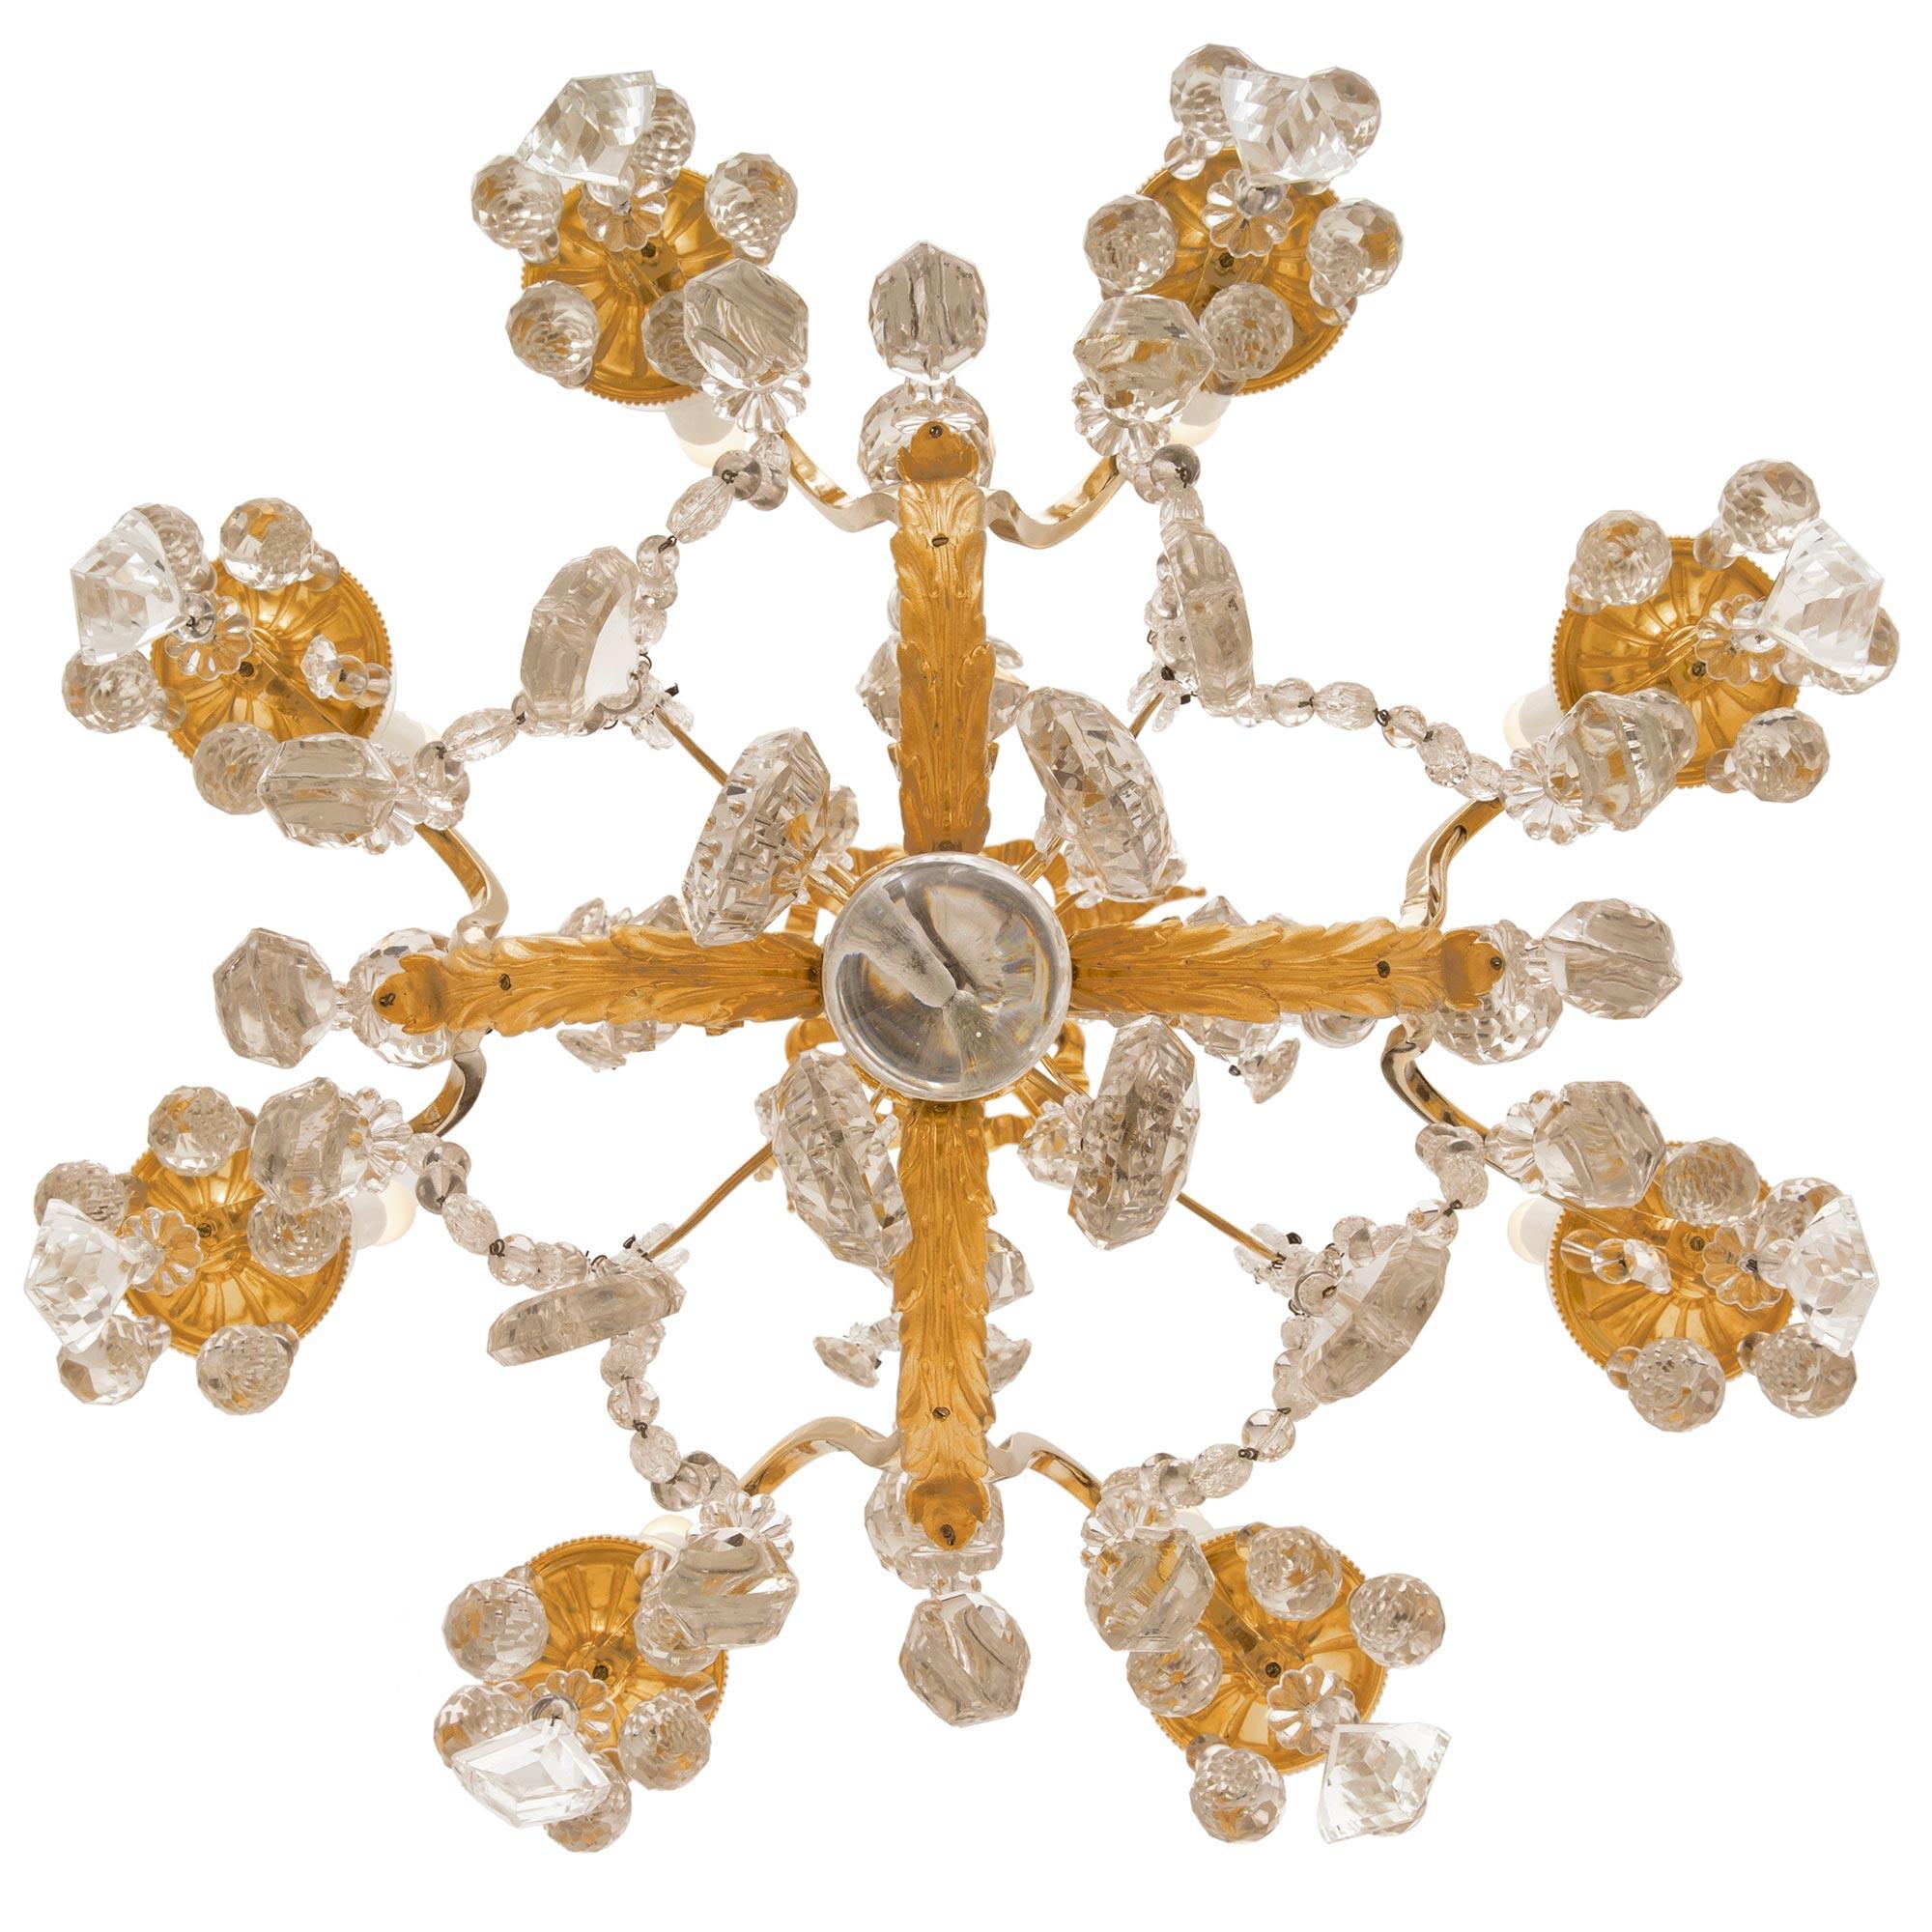 Ein außergewöhnlicher und einzigartiger französischer Kronleuchter aus dem 19. Jahrhundert aus Louis XVI Ormolu und Baccarat Kristall. In der Mitte des achtarmigen Kronleuchters befindet sich ein wunderschöner Kugelanhänger aus massivem Kristall,